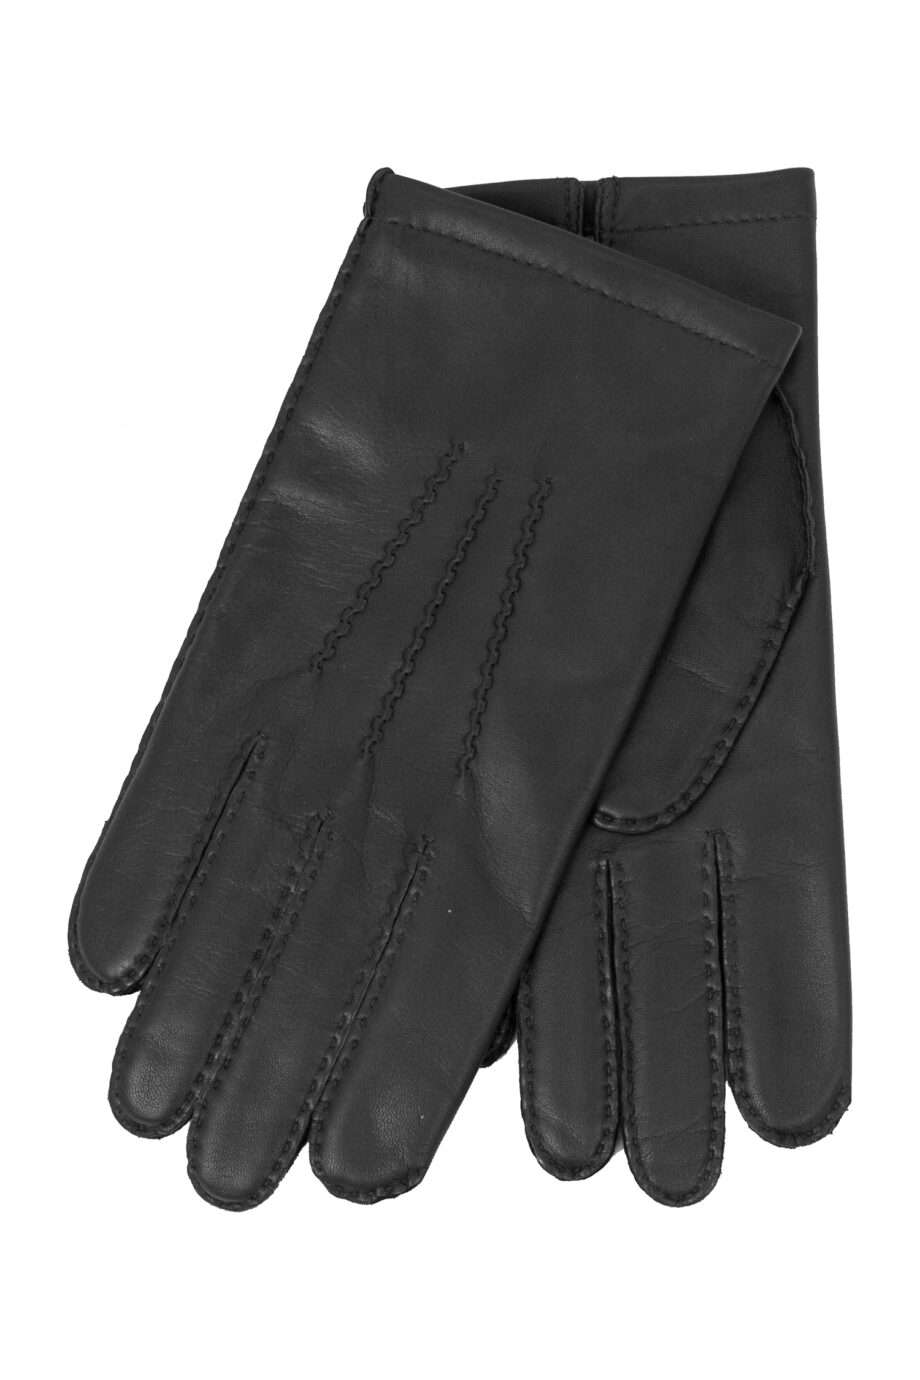 classic black leather glove (men) medium